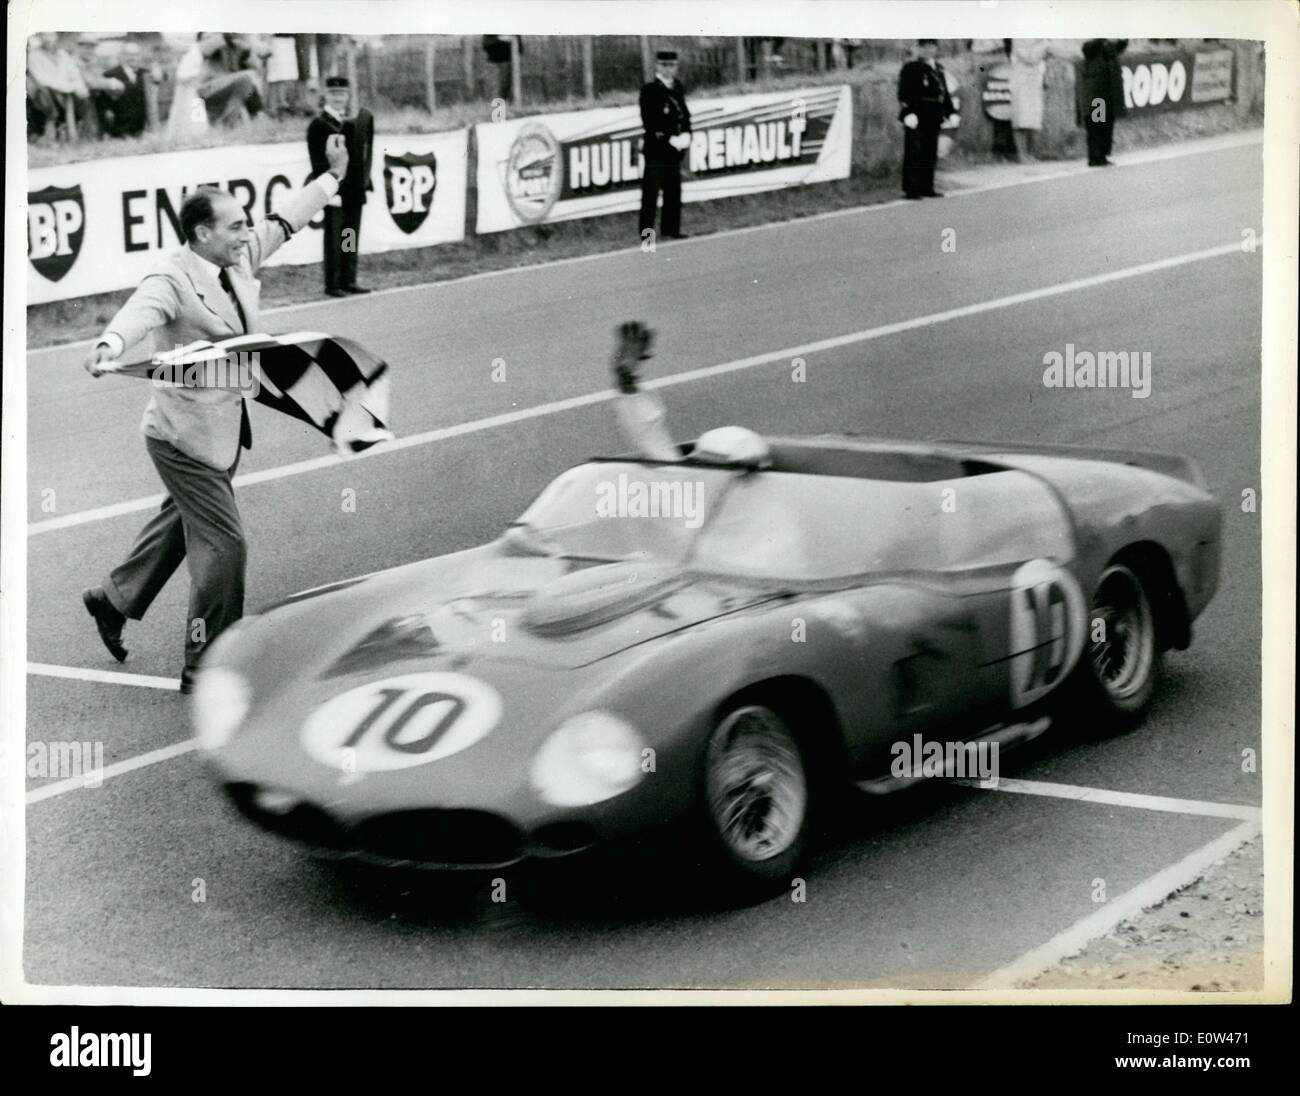 Giugno 06, 1961 - Belga e American stelle vincere Le Mans Grand Prix: i vincitori del 1961 Le Mans Grand Prix erano il belga ace Oliver Gendebien e America's Phil Hill. nel loro Italiano Ferrari. Esse coprirono 2.780 miglia in 24 ore ad una velocità media di 115,9 m.p.h.. battendo la 113 Miglia p.h. set di record fino Ron Flockhart e tardo Ivor Bueb nel 1957. Mostra fotografica di Oliver Gendebien alla guida della sua Ferrari al di sopra della linea di vincere il 1961 Le Mans Grand Prix. Foto Stock